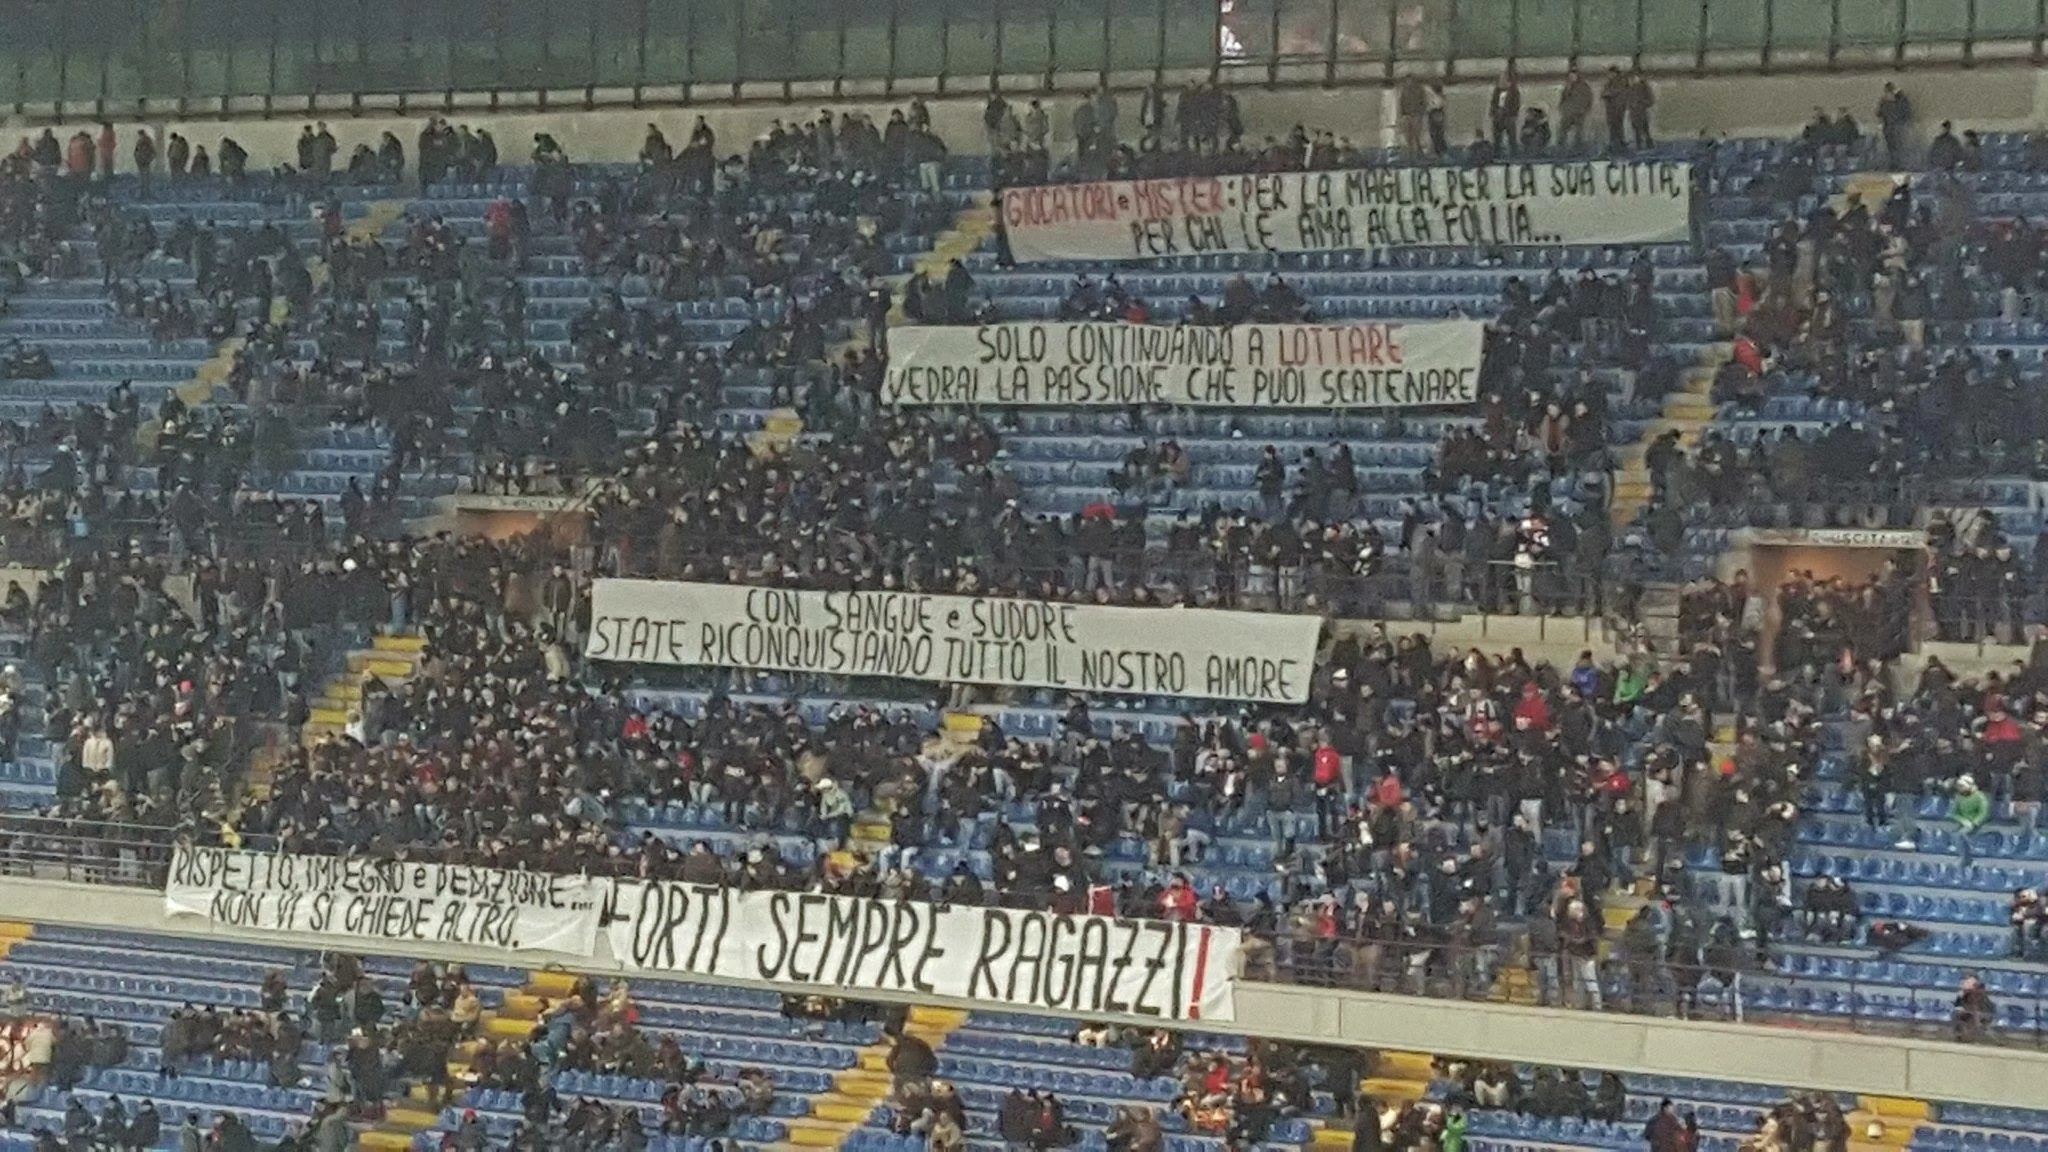 SM FOTO/ Milan-Torino, la Curva Sud applaude squadra e mister a San Siro: “Sangue e sudore: state riconquistando il nostro amore”